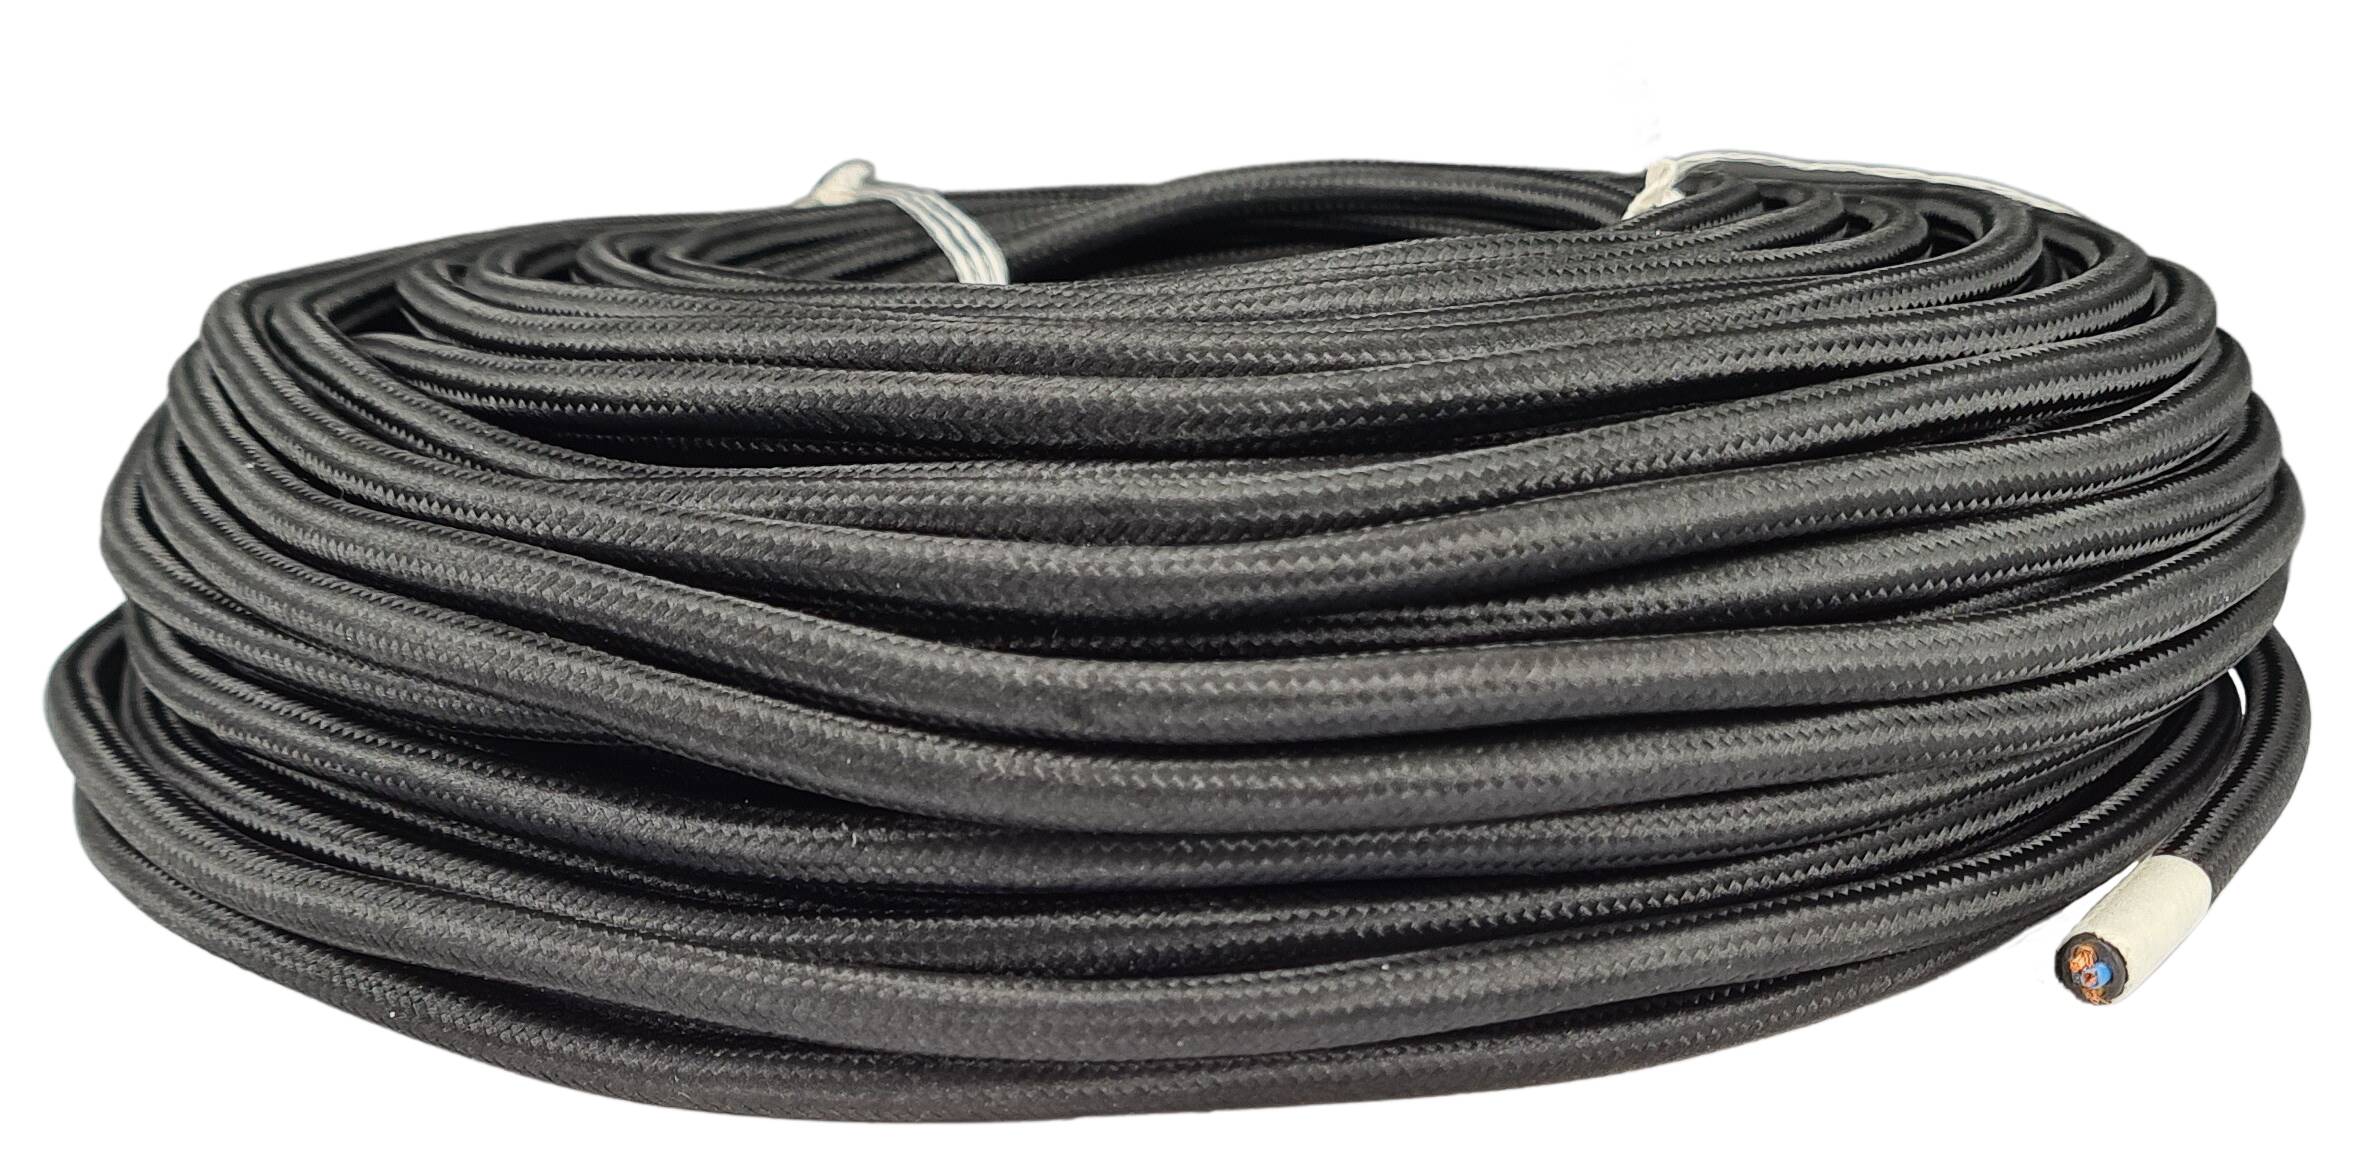 Kabel m. Stahlseil 3G 0,75 HO3VV-F PVC  textilummantelt RAL 9005 schwarz